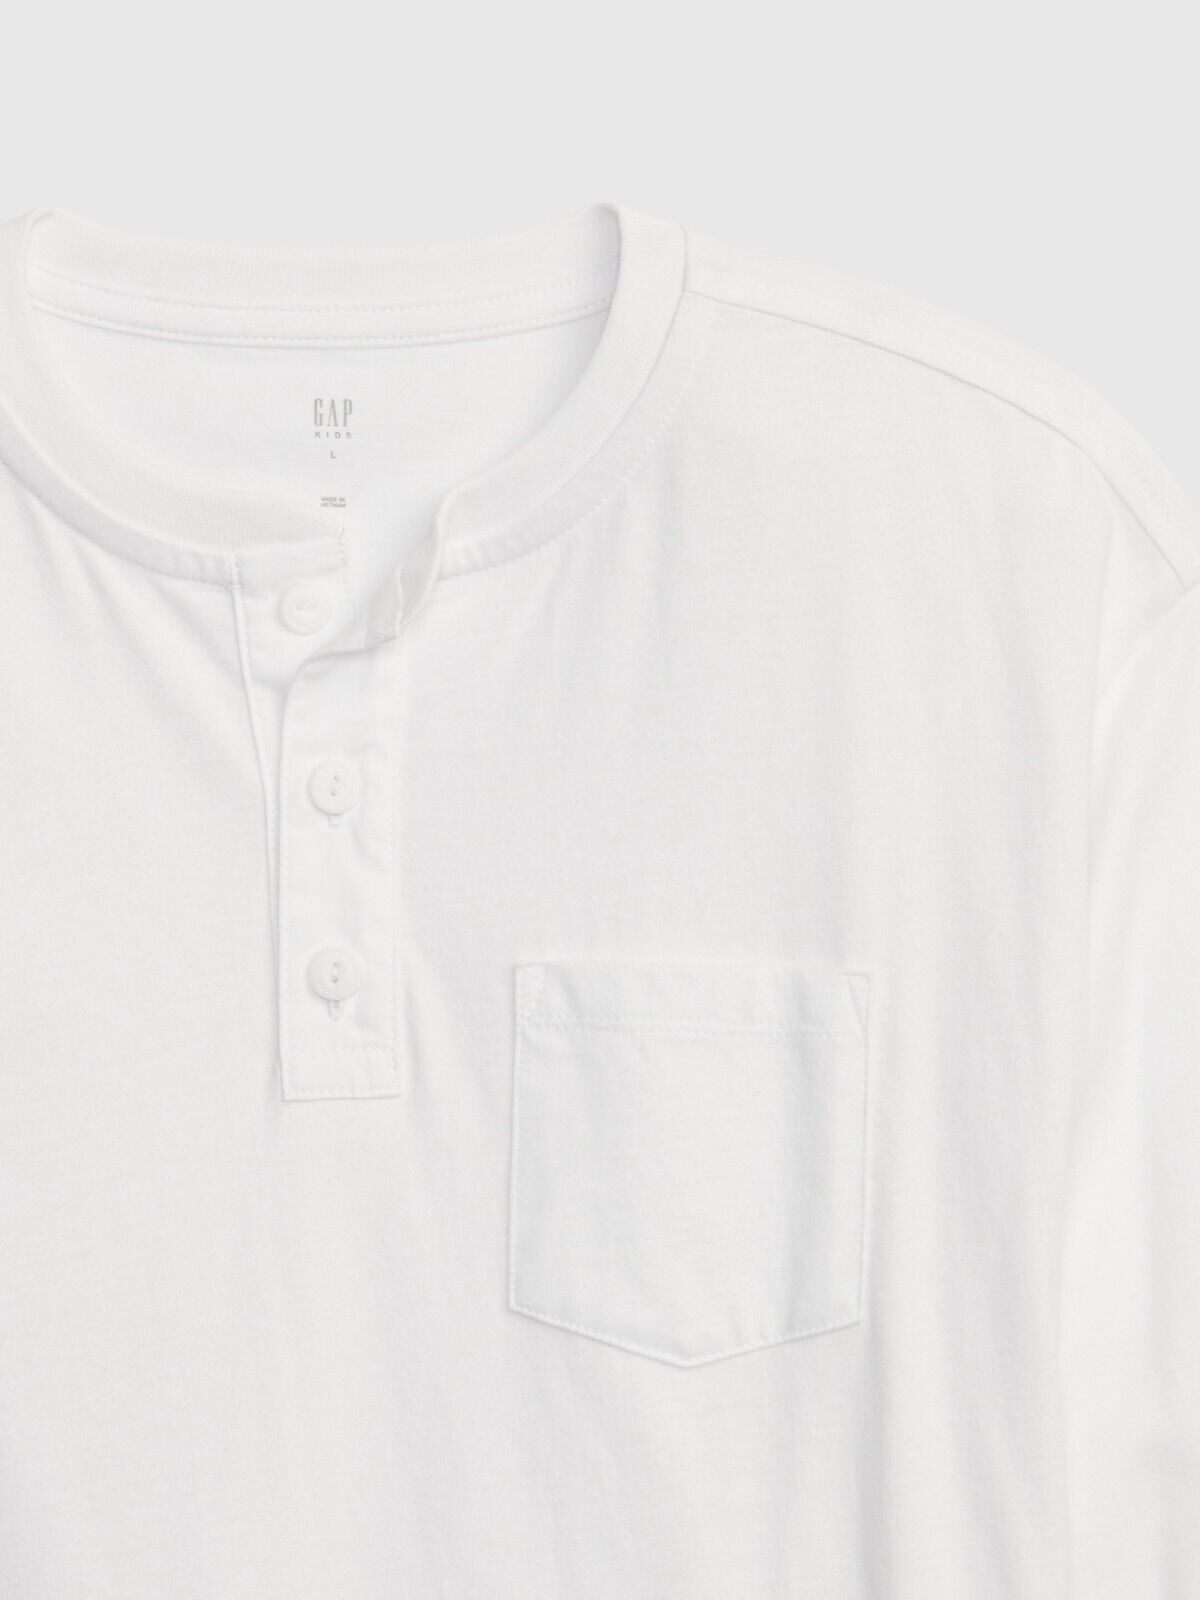 Camisa manga larga blanca Gap niño